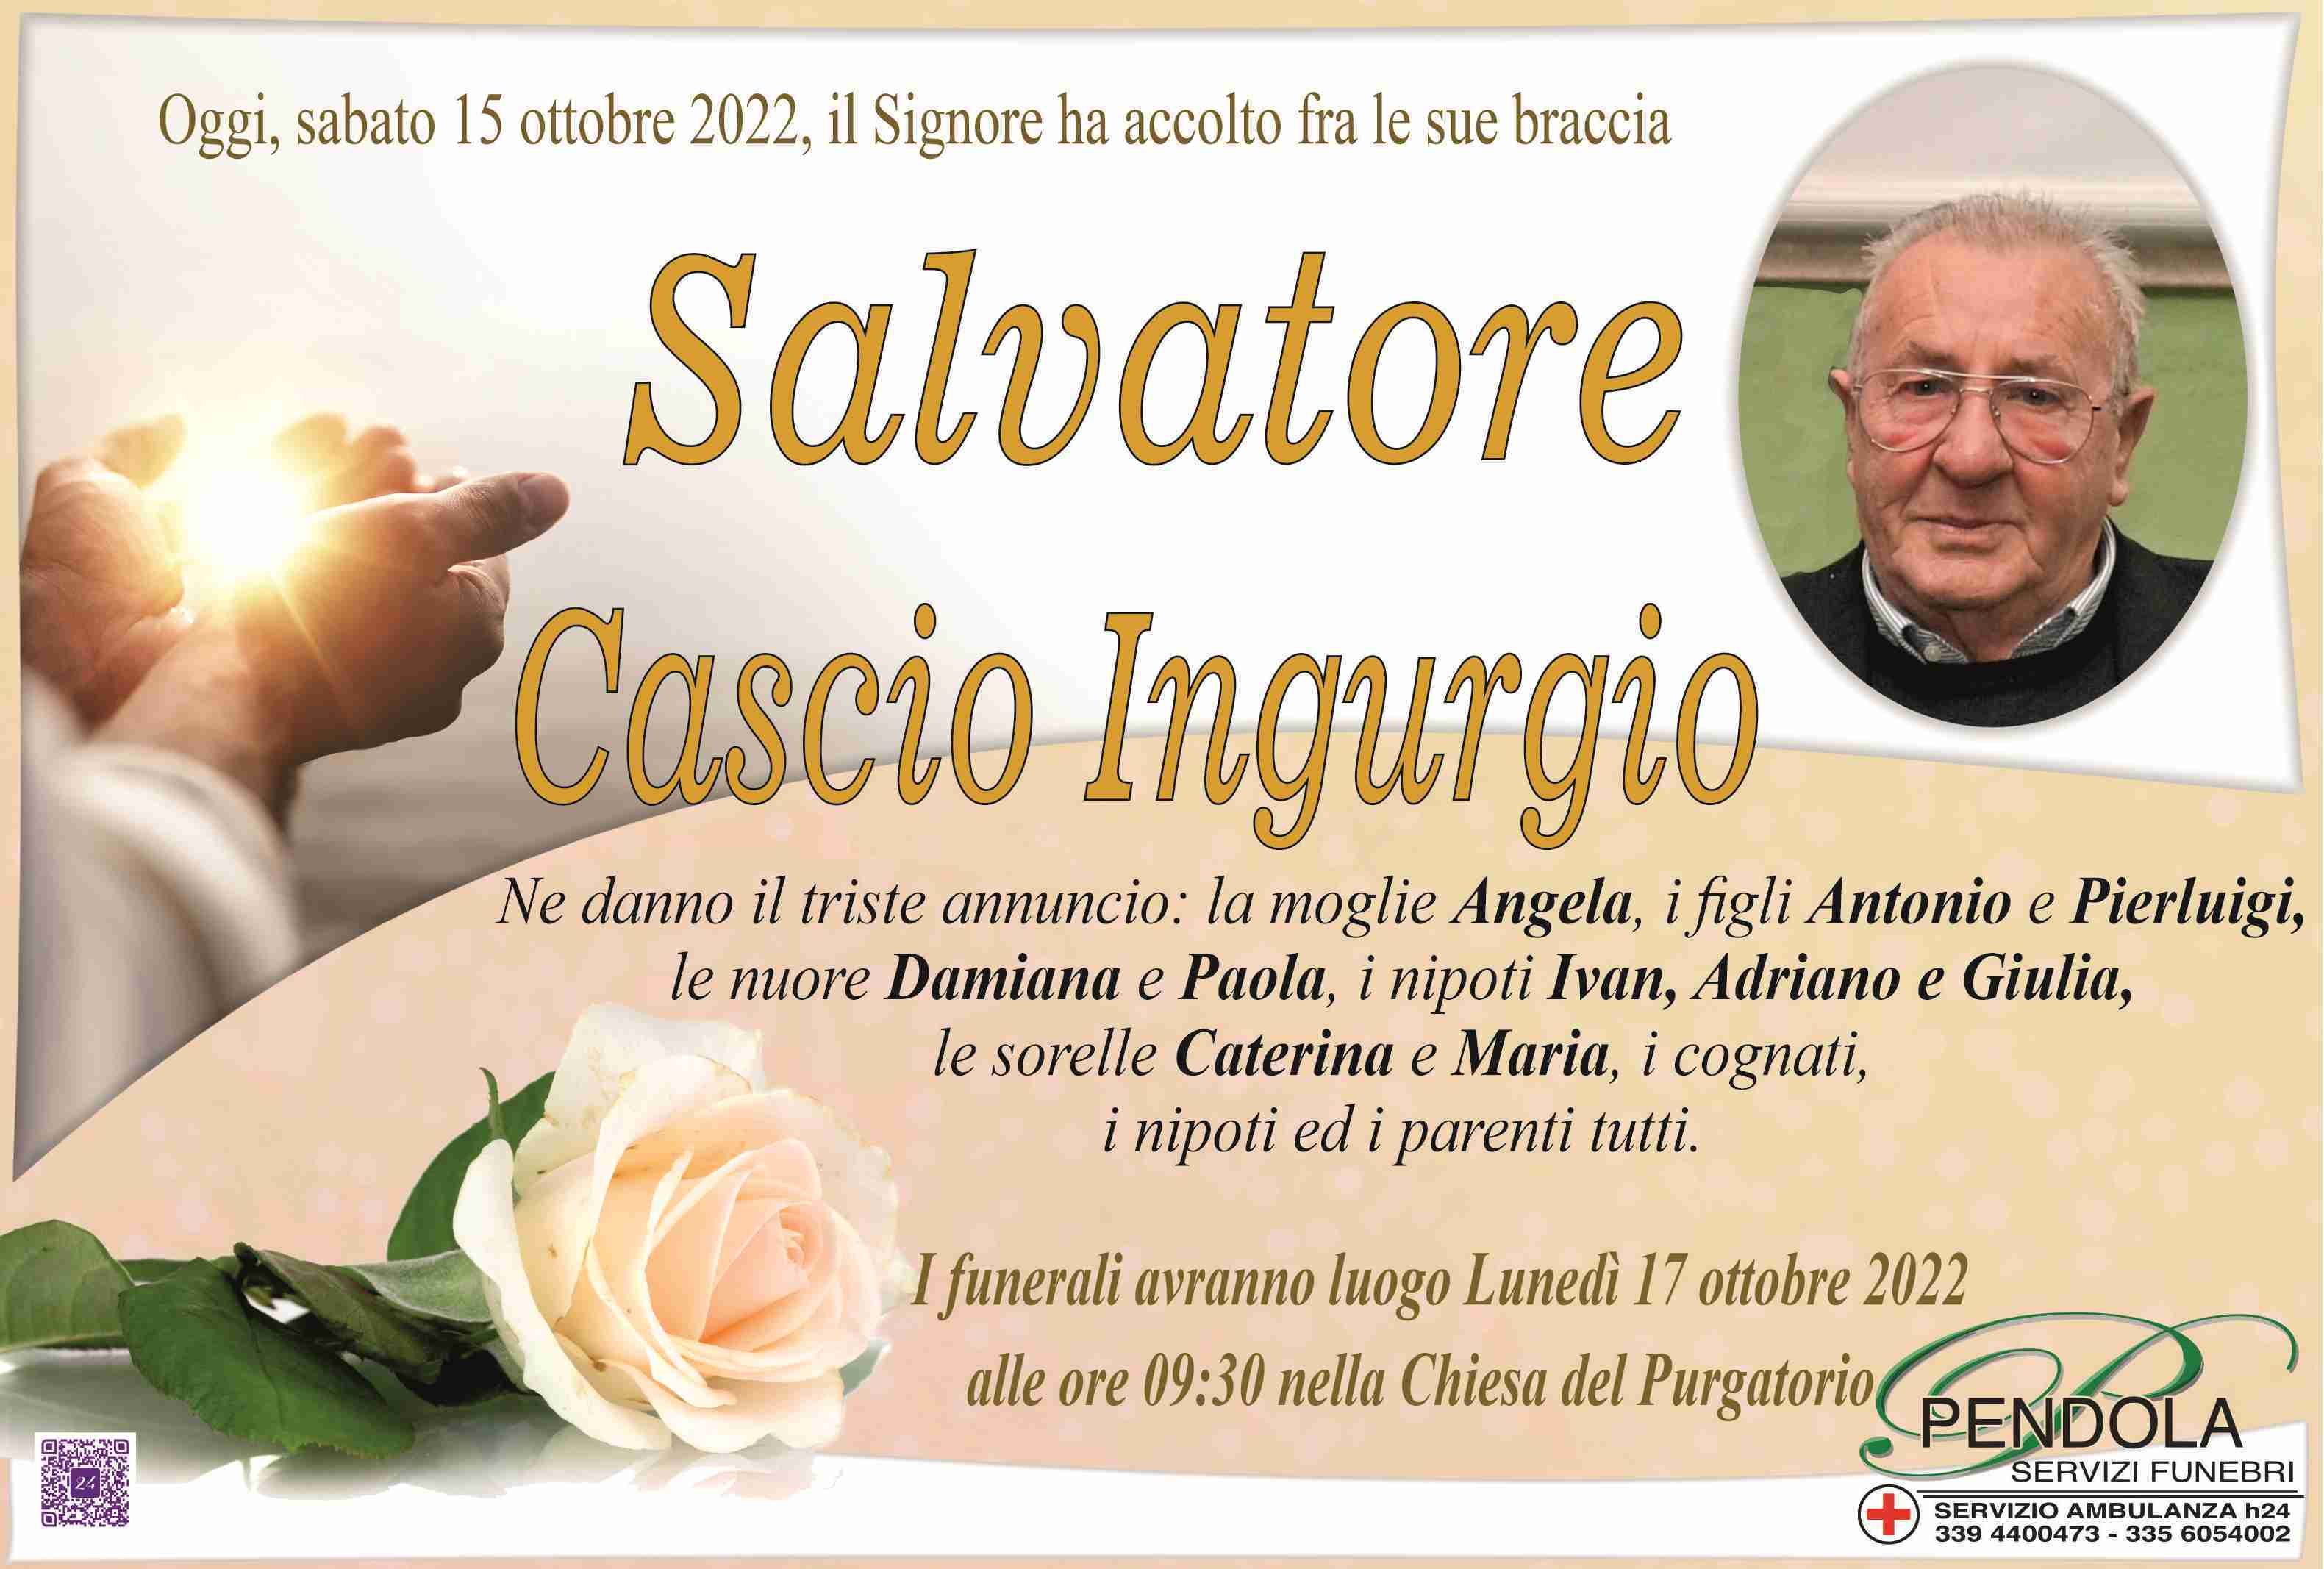 Salvatore Cascio Ingurgio